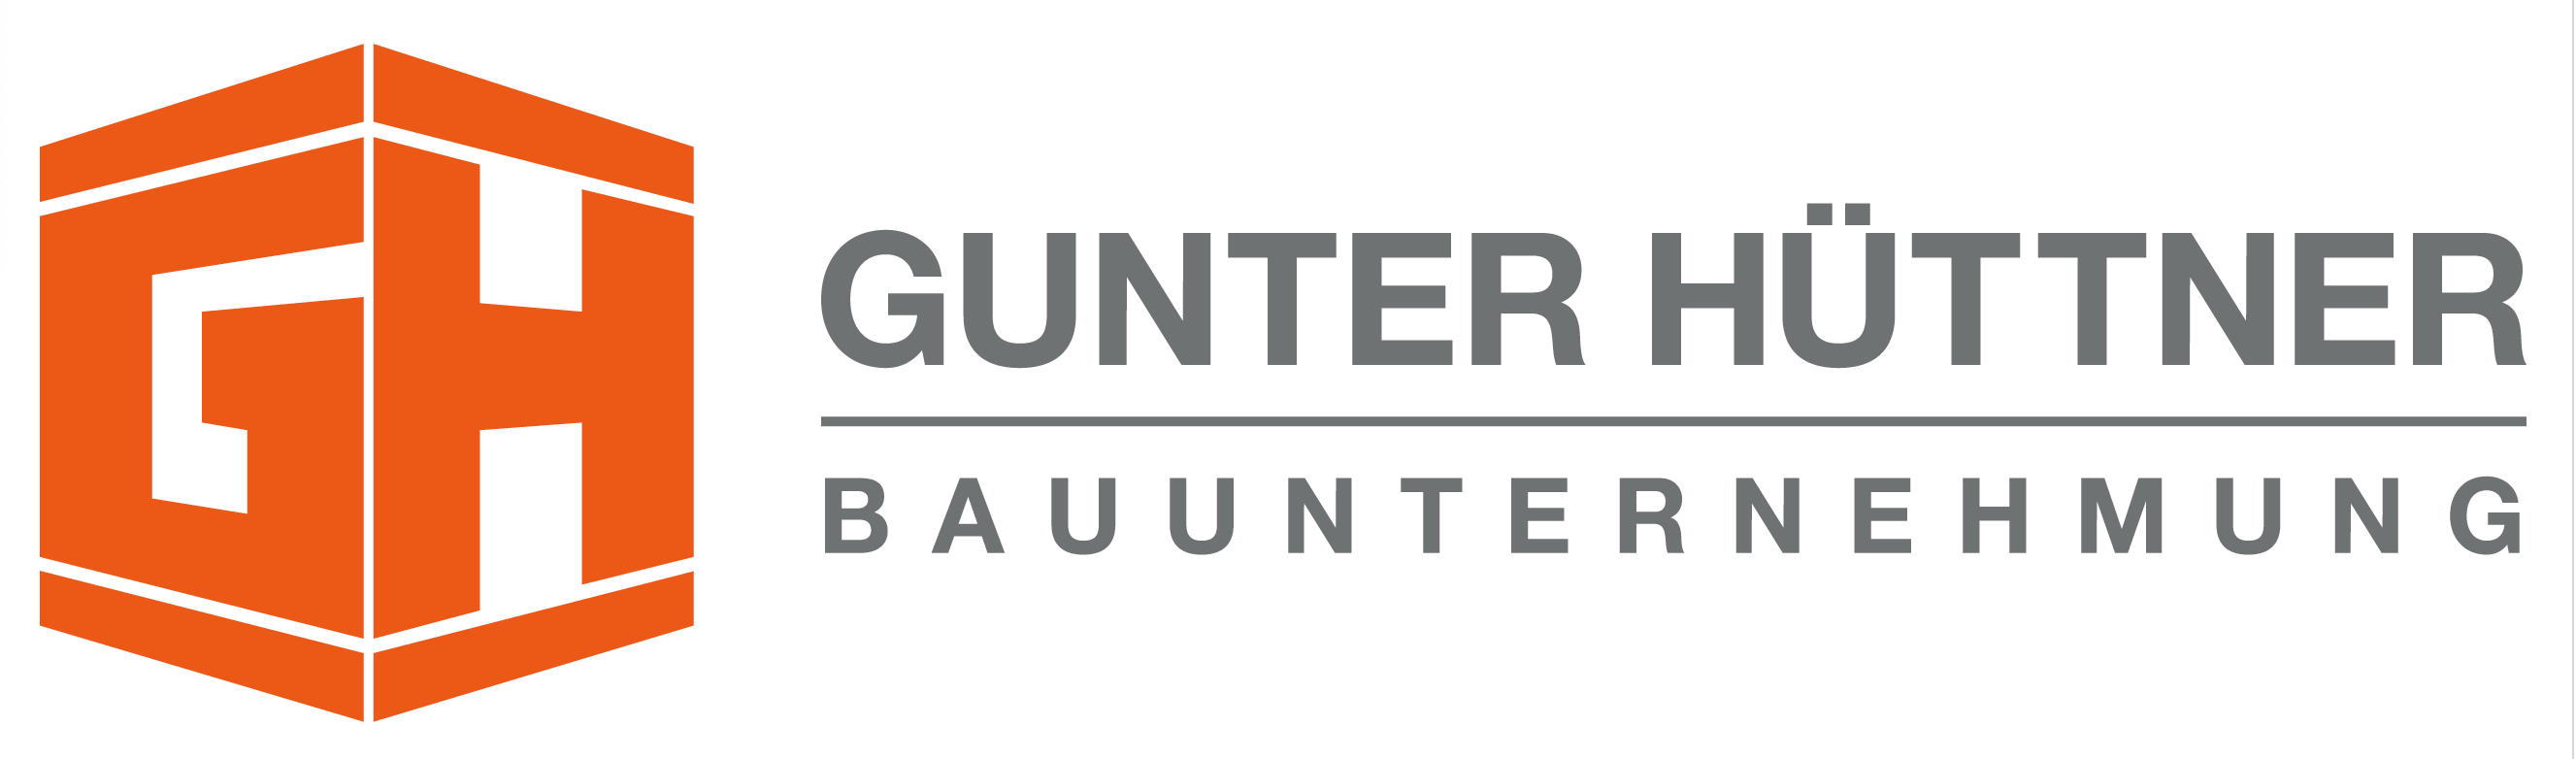 GUNTER HÜTTNER + Co. GmbH BAUUNTERNEHMUNG